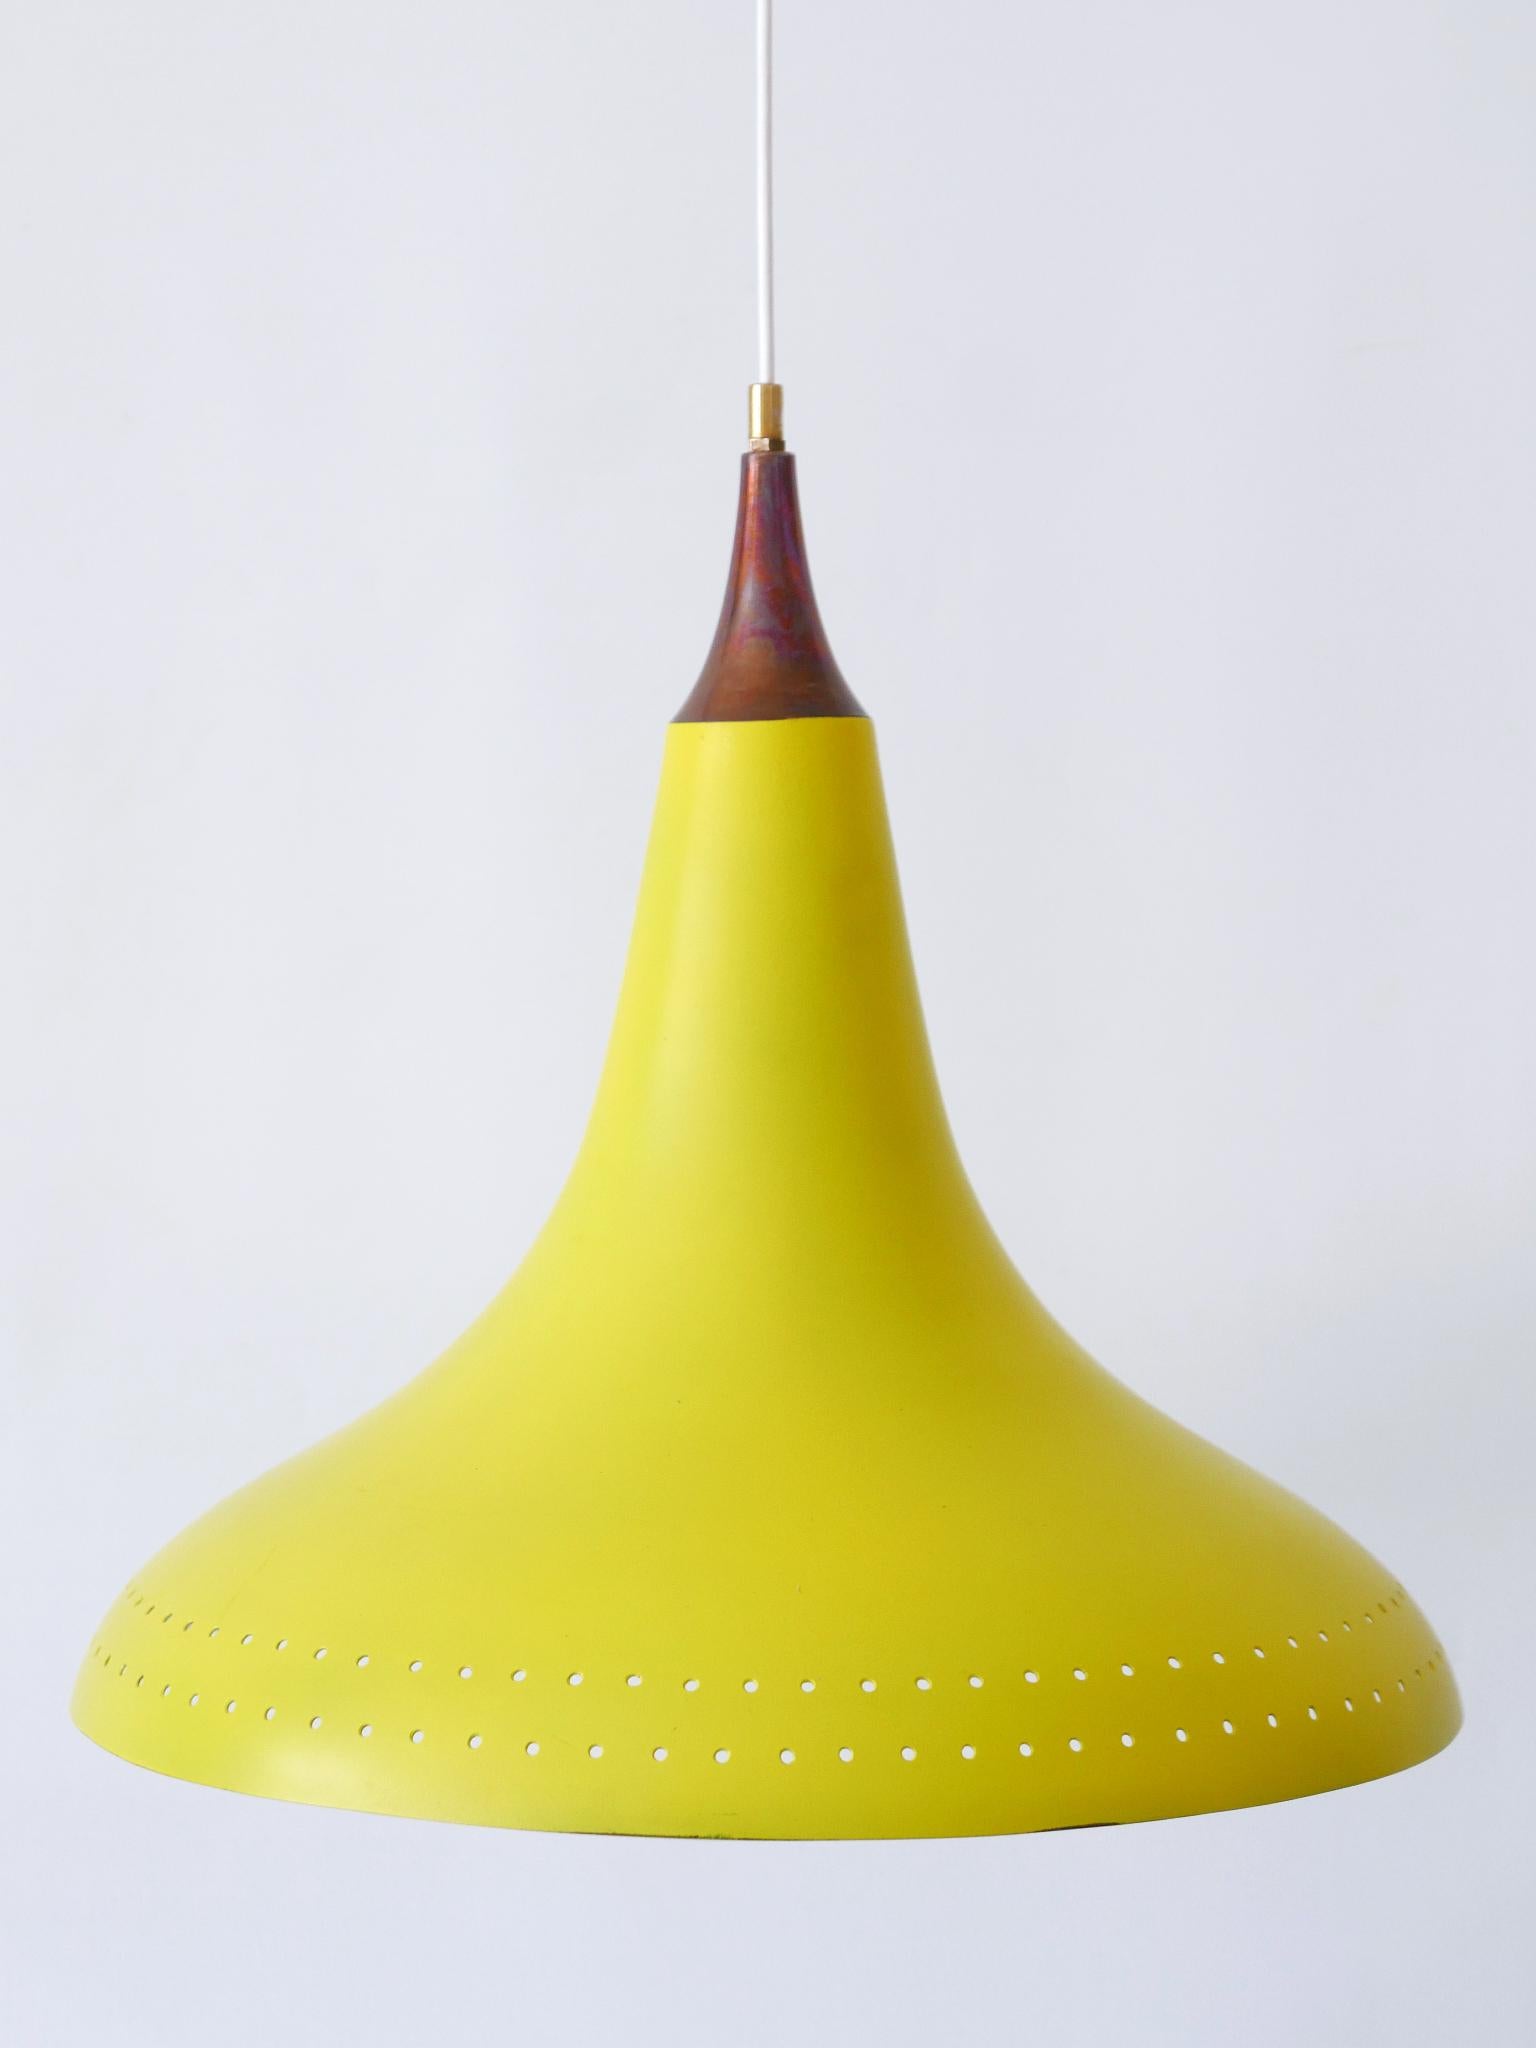 Exceptional Mid-Century Modern Perforated Aluminium Pendant Lamp Austria 1960s For Sale 8